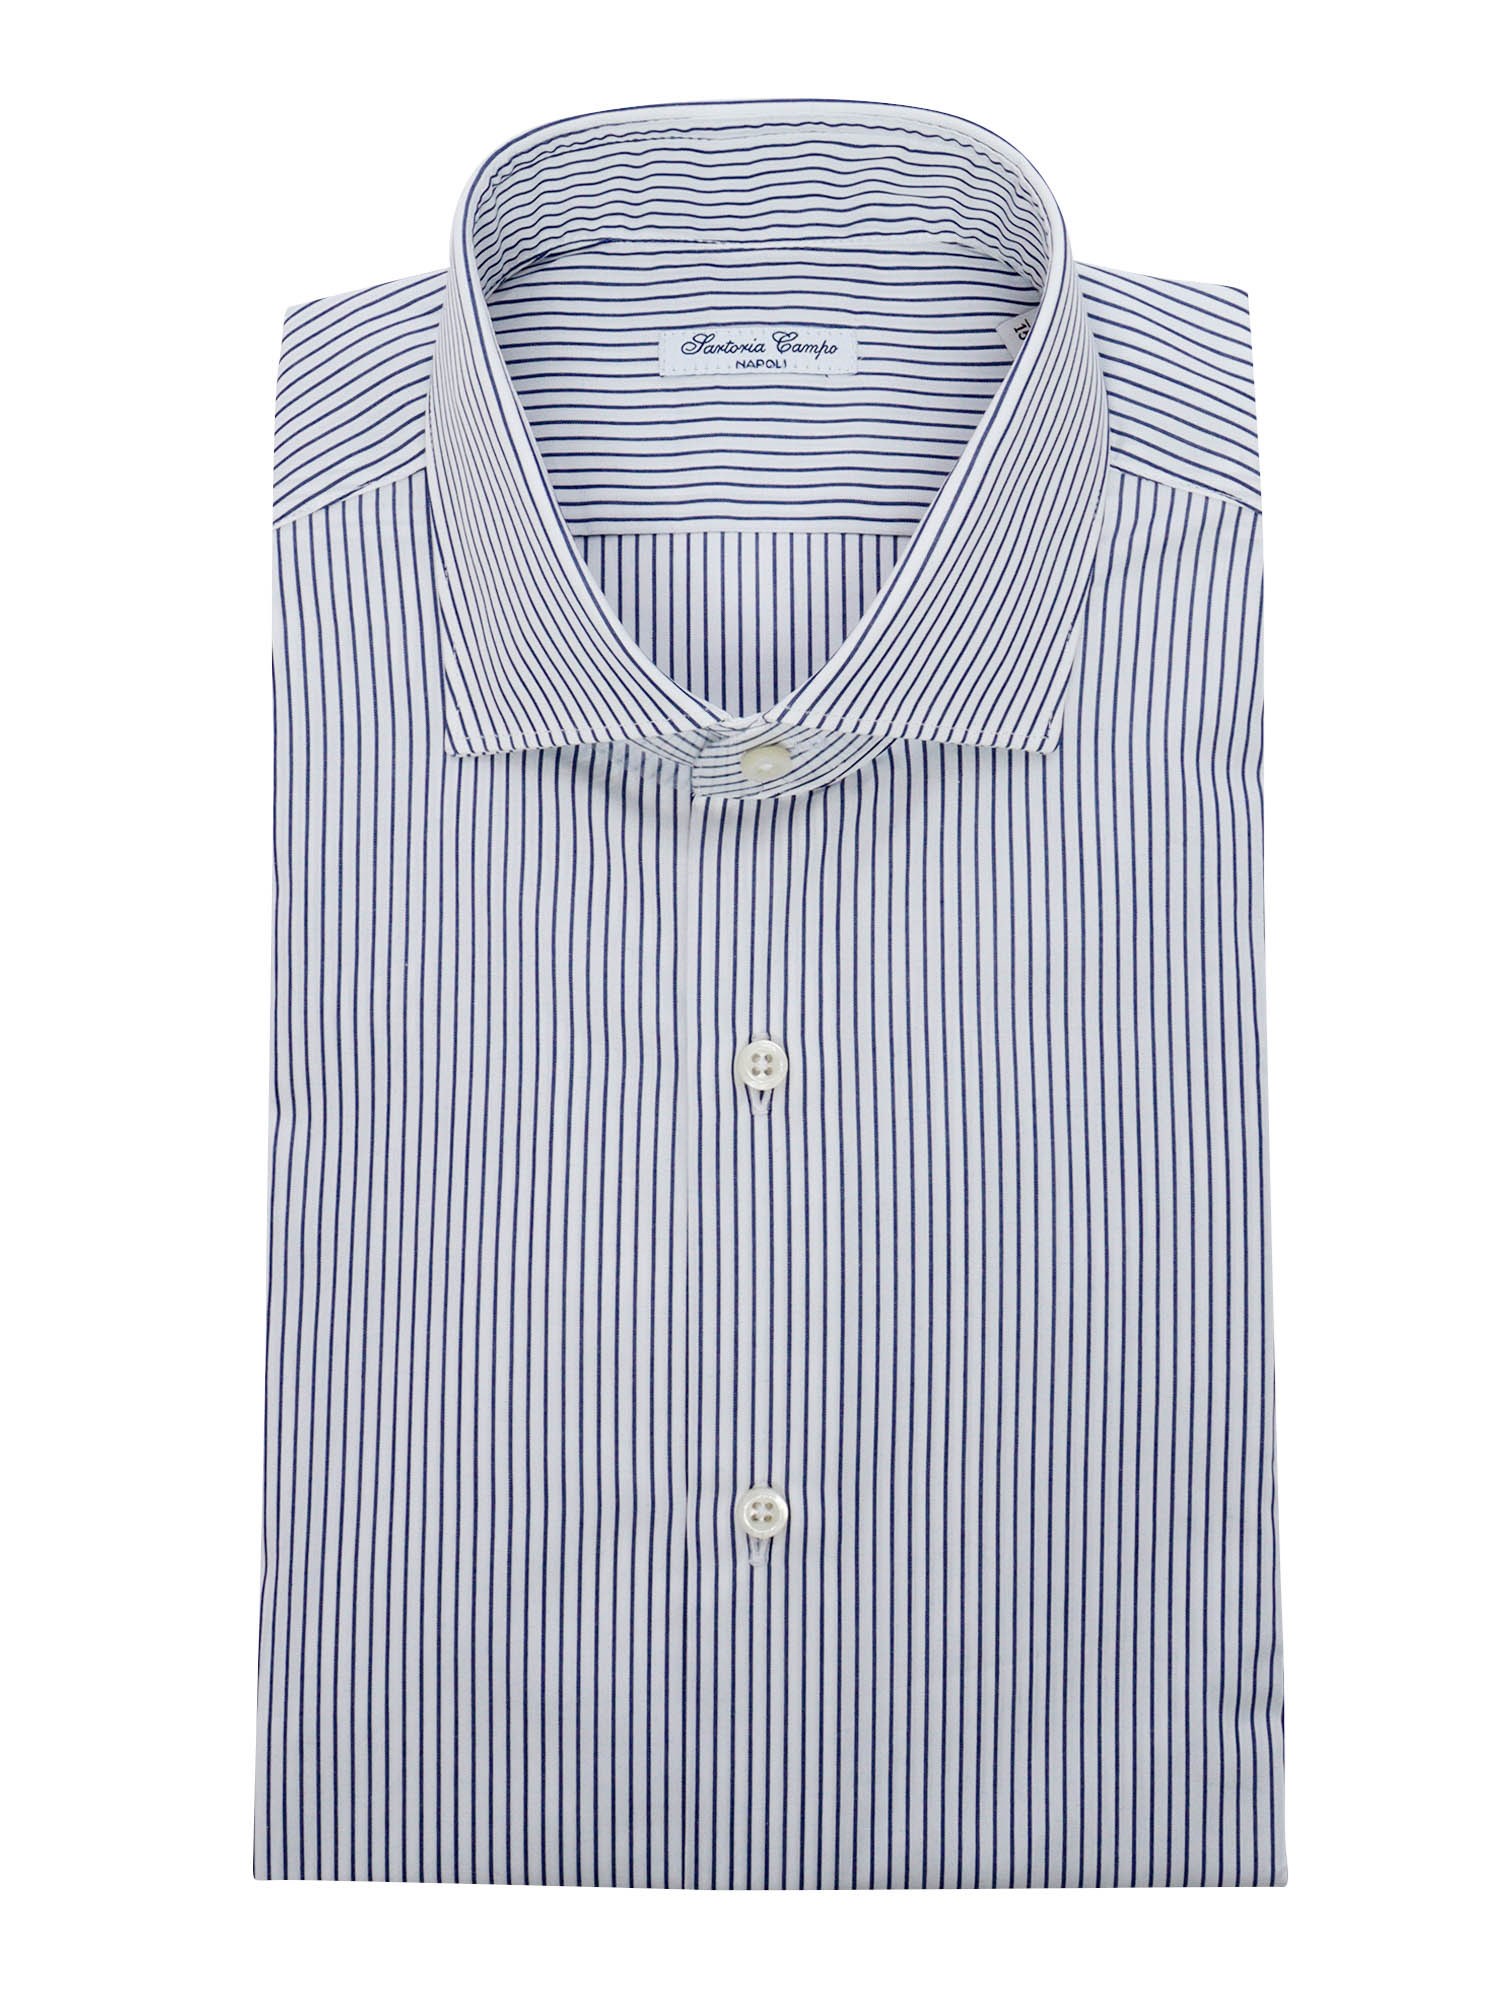 Sartoria Del Campo-sonrisa Blue And White Striped Shirt In Multi